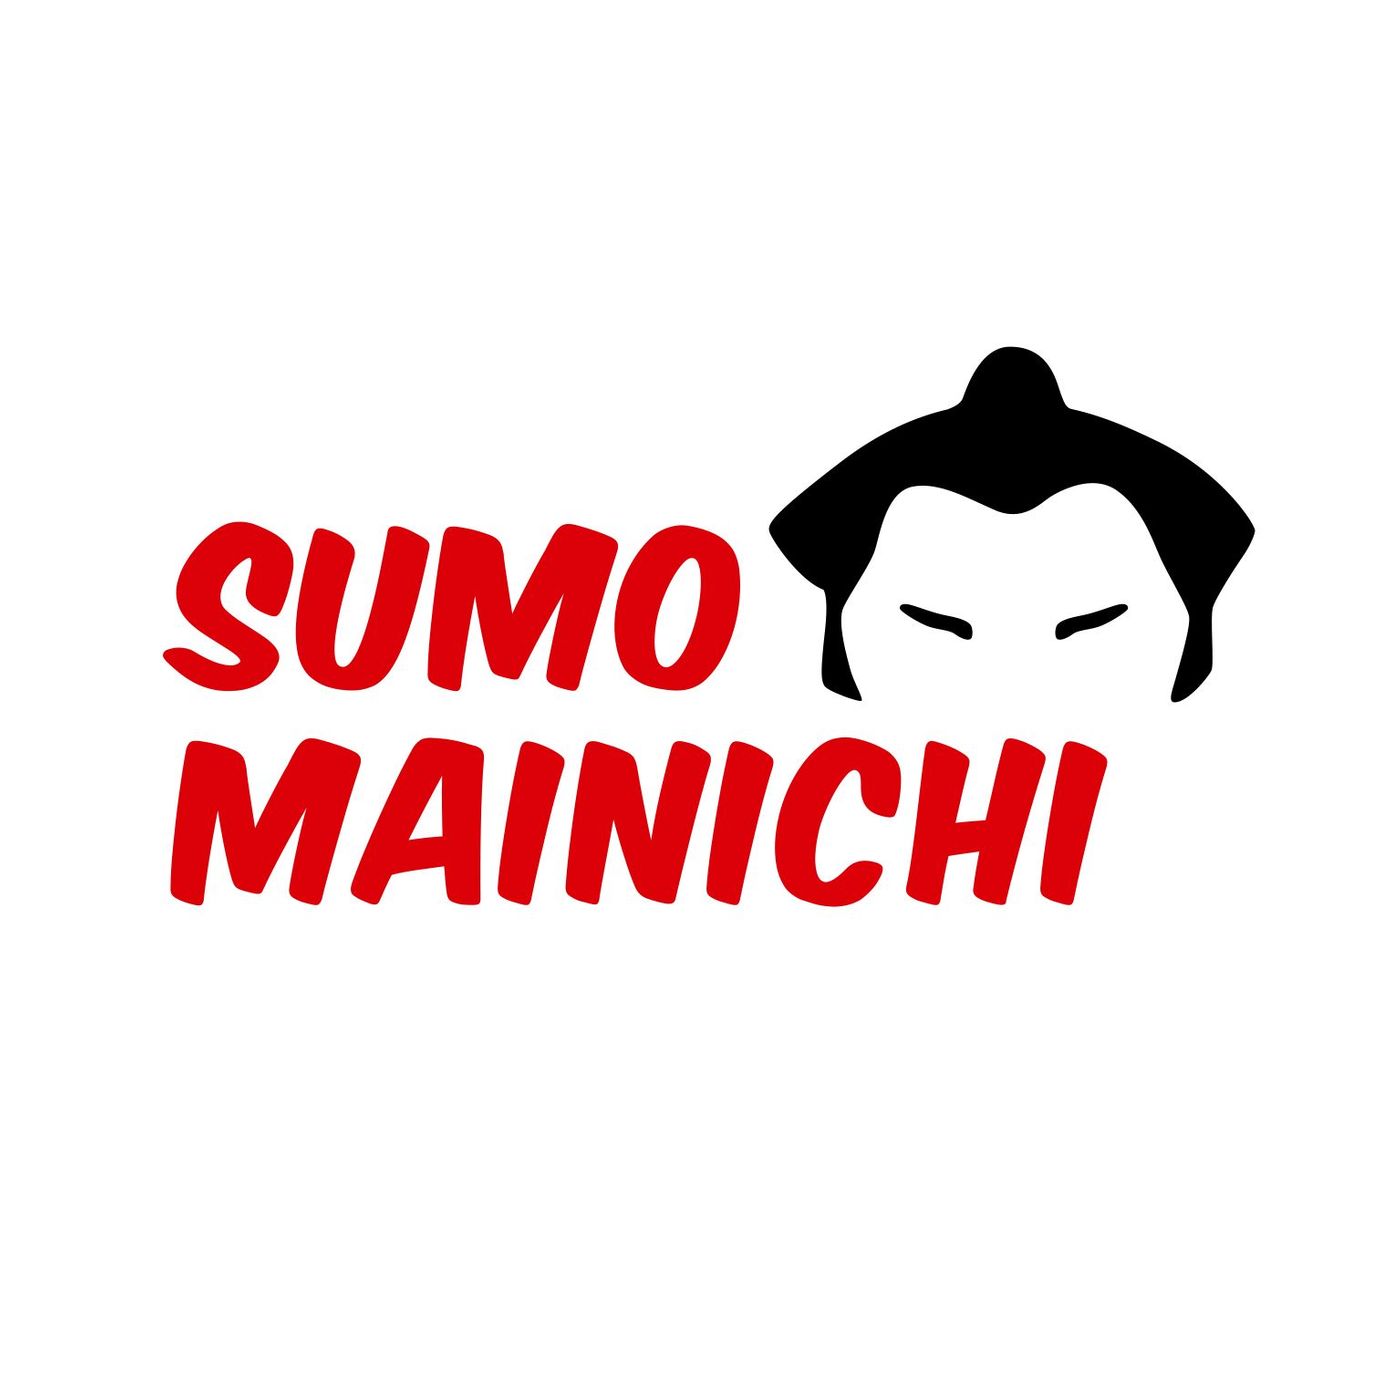 Sumo Mainichi - Day 14 - March 2021